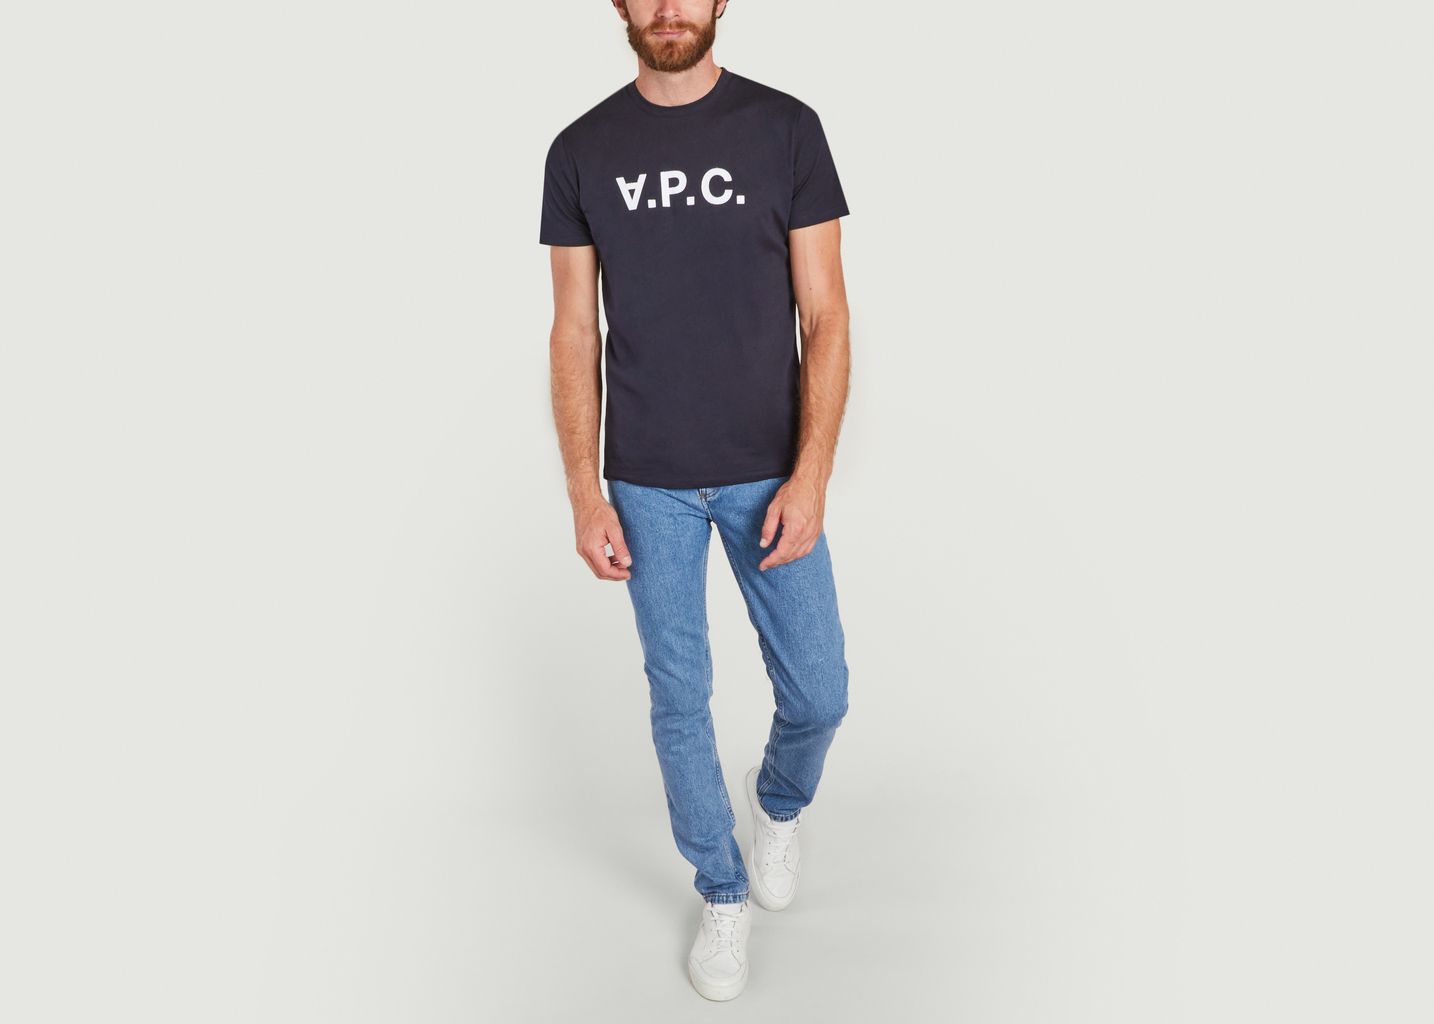 VPC organic cotton t-shirt - A.P.C.